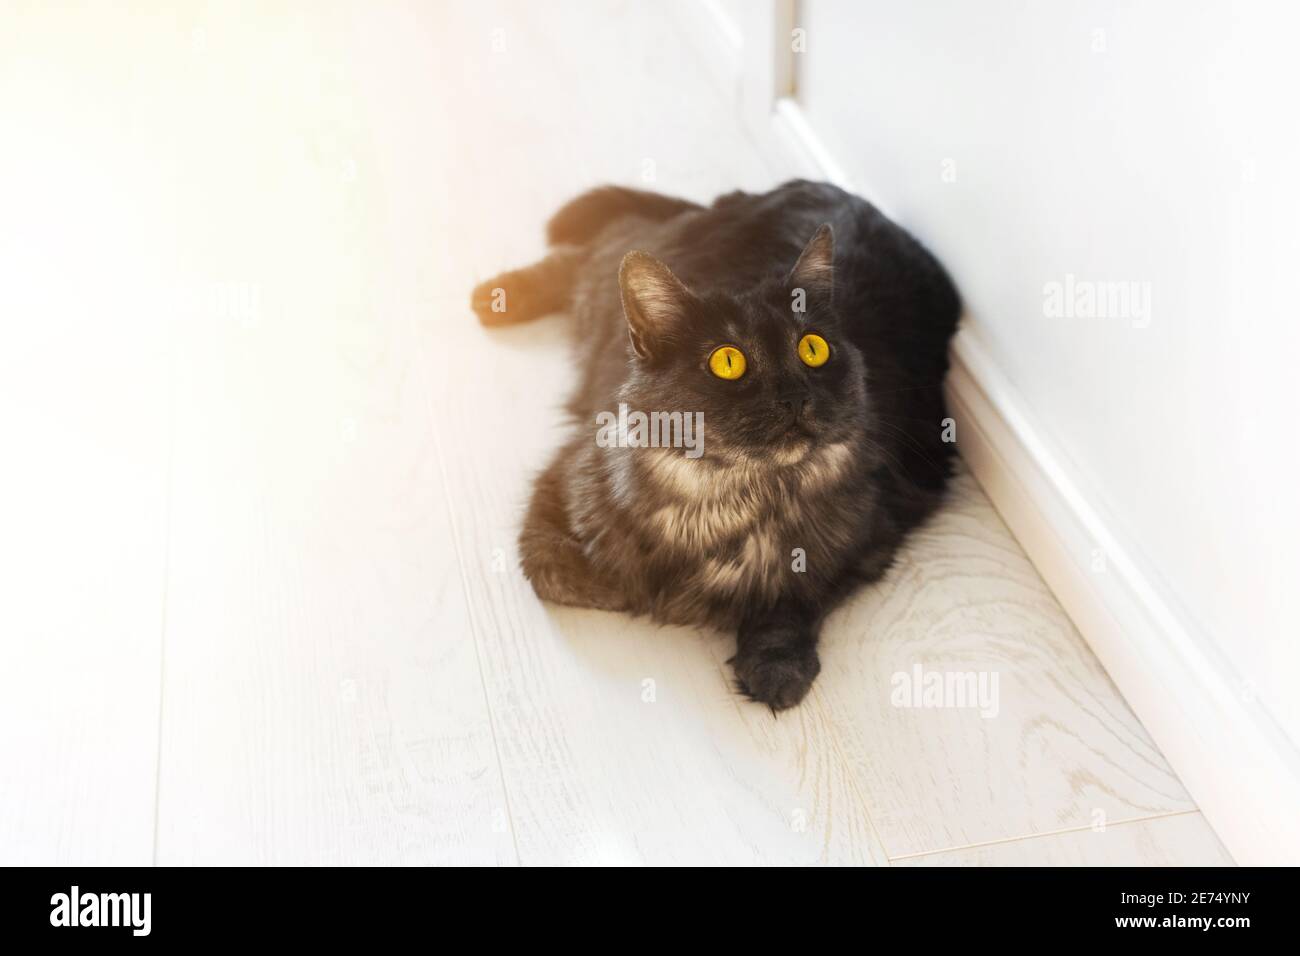 Beau chat noir domestique doux avec des yeux jaunes se trouve sur le plancher en bois. Jour ensoleillé, appartement lumineux. Les animaux de compagnie dorloter au soleil Banque D'Images